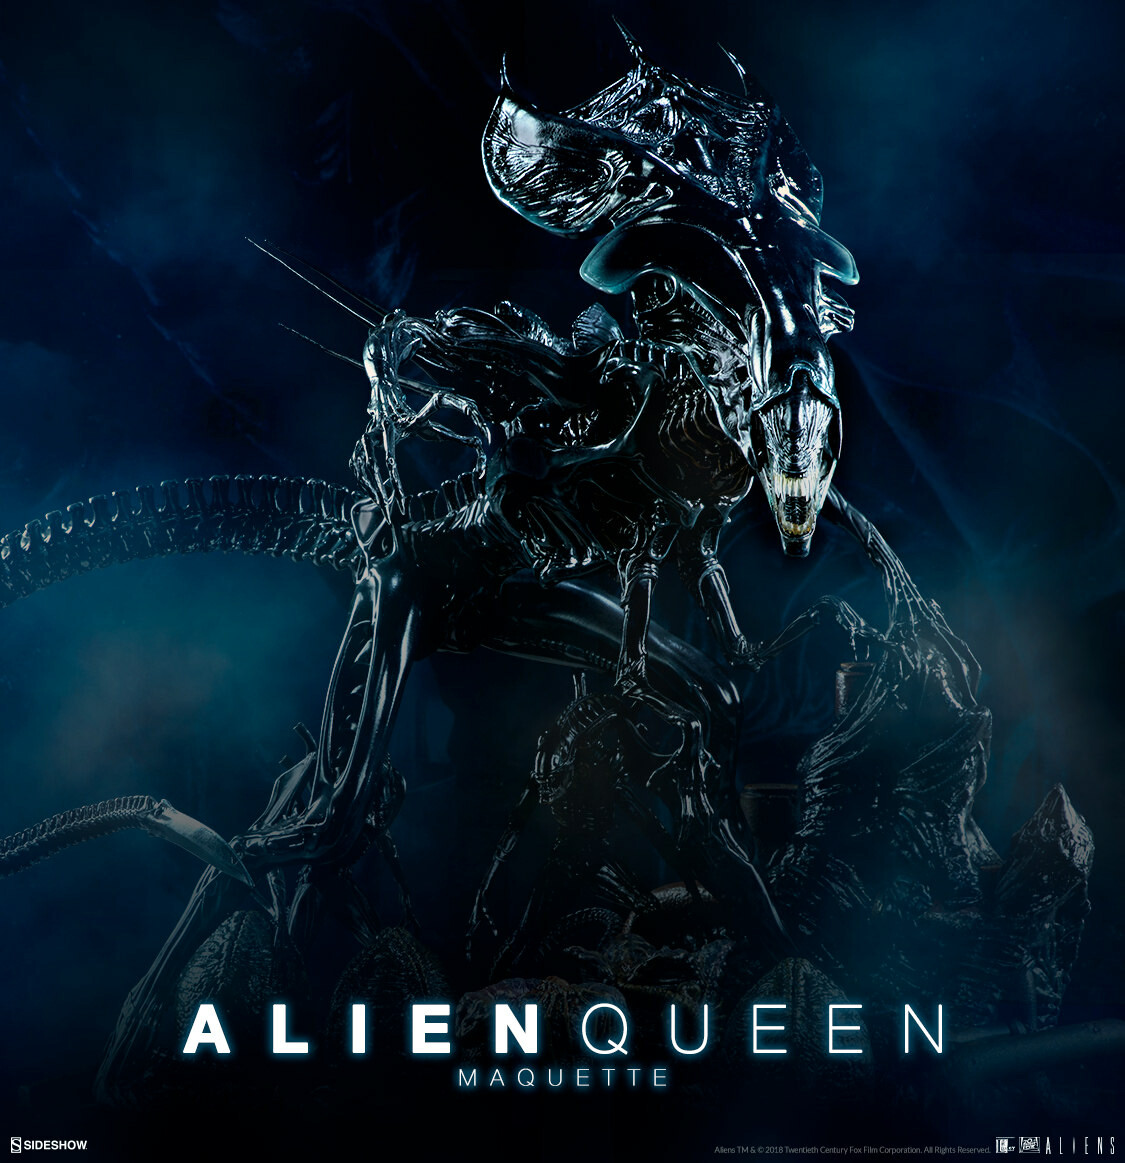 ALIEN Queen Poster alieni foto con stampa taglia A4 A3-acquista 2 ottenere qualsiasi 2 FREE 